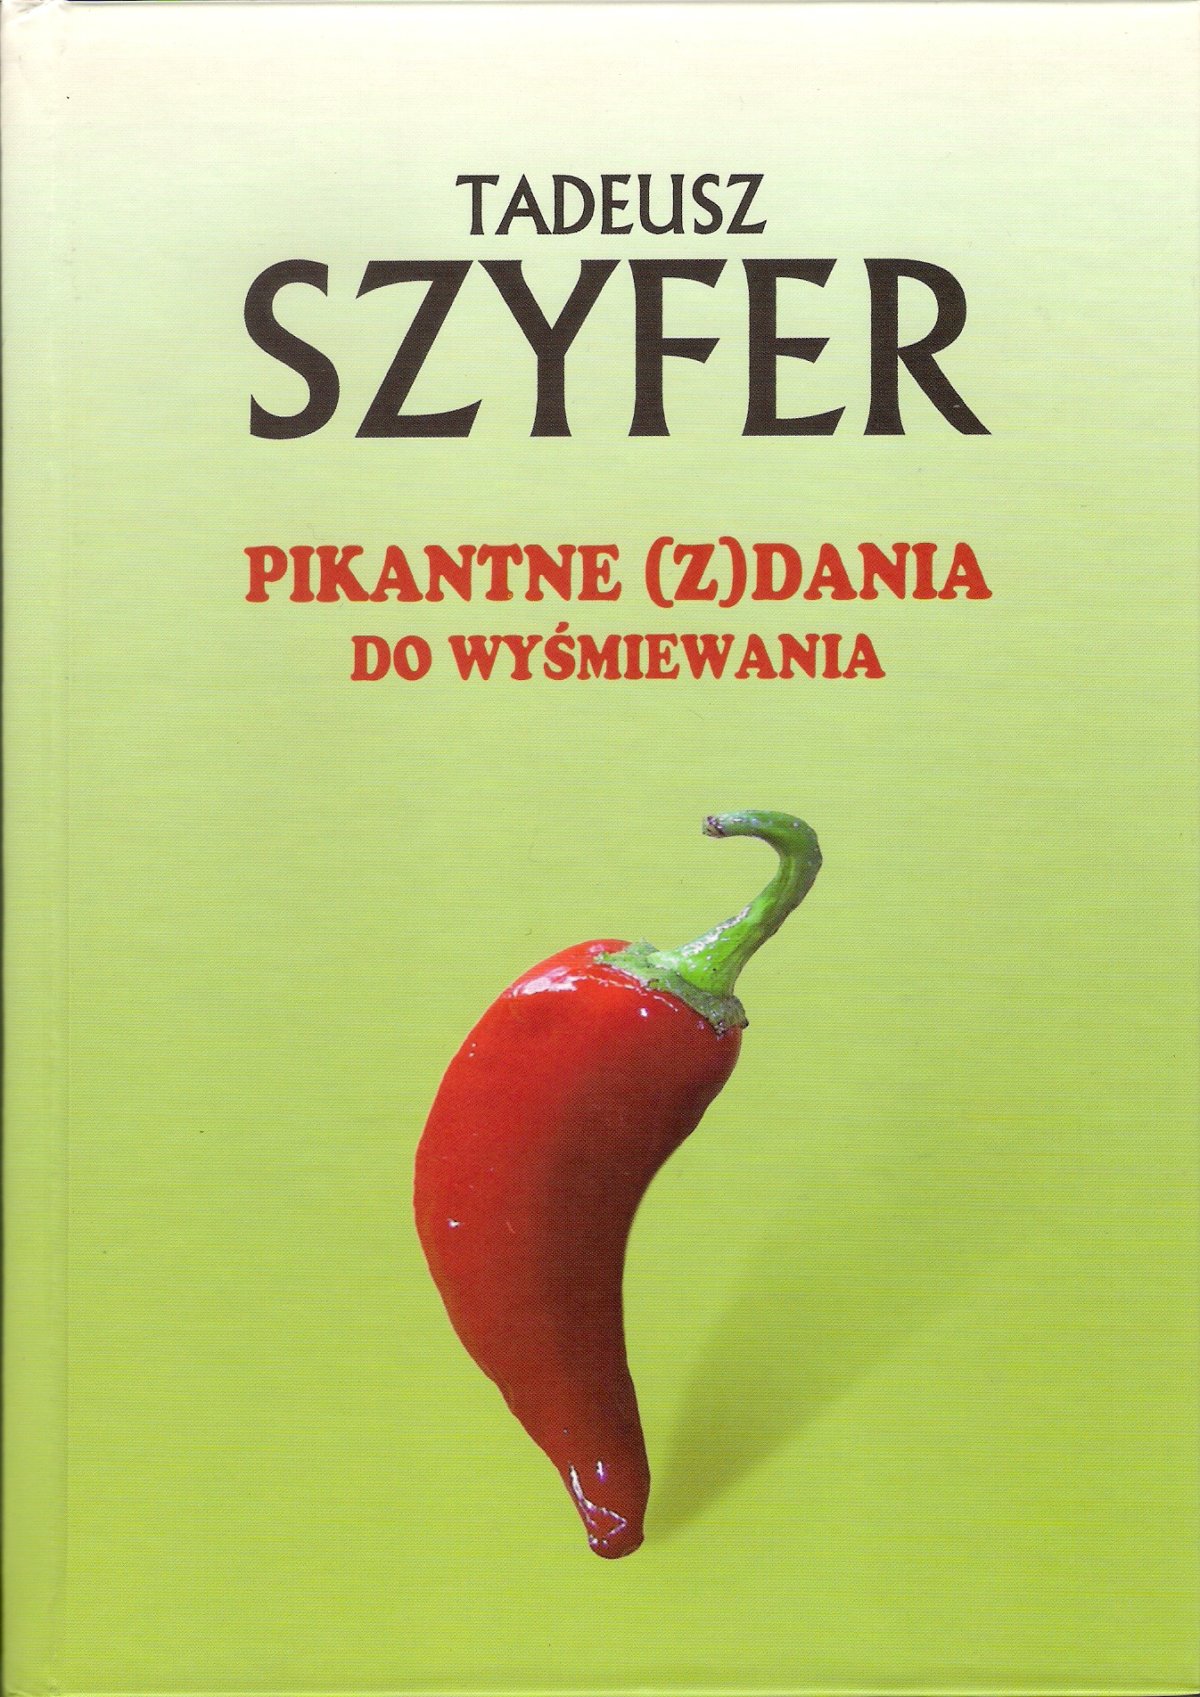 W 2017 r. Biblioteka wydała tom z zebranymi fraszkami, aforyzmami oraz innymi utworami satyrycznymi Tadeusza Szyfera. Wzięłam go do ręki, gdy dowiedziałam się, że autor zmarł 24 listopada.